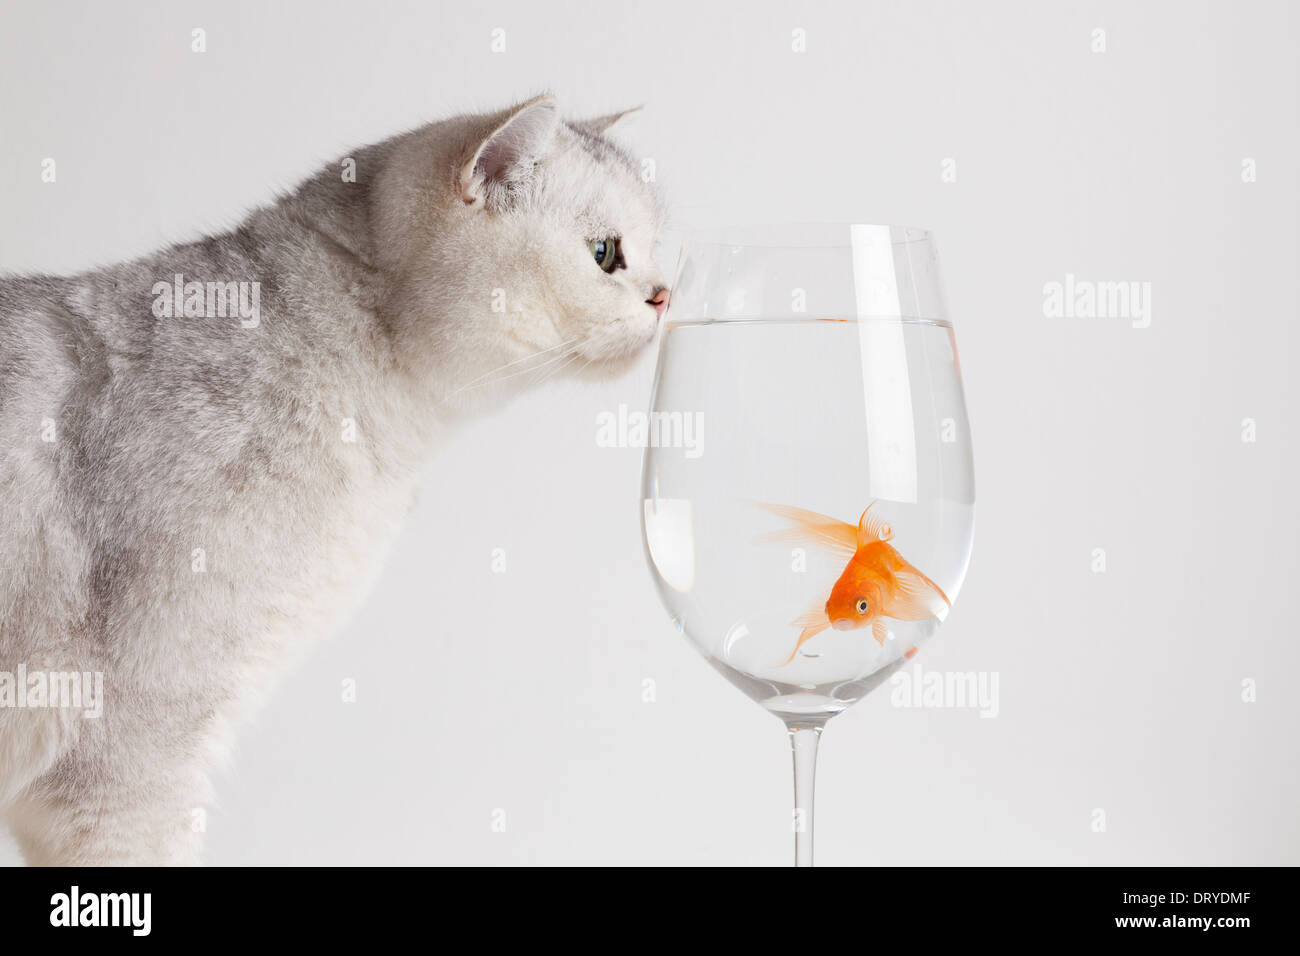 White cat staring at goldfish Stock Photo